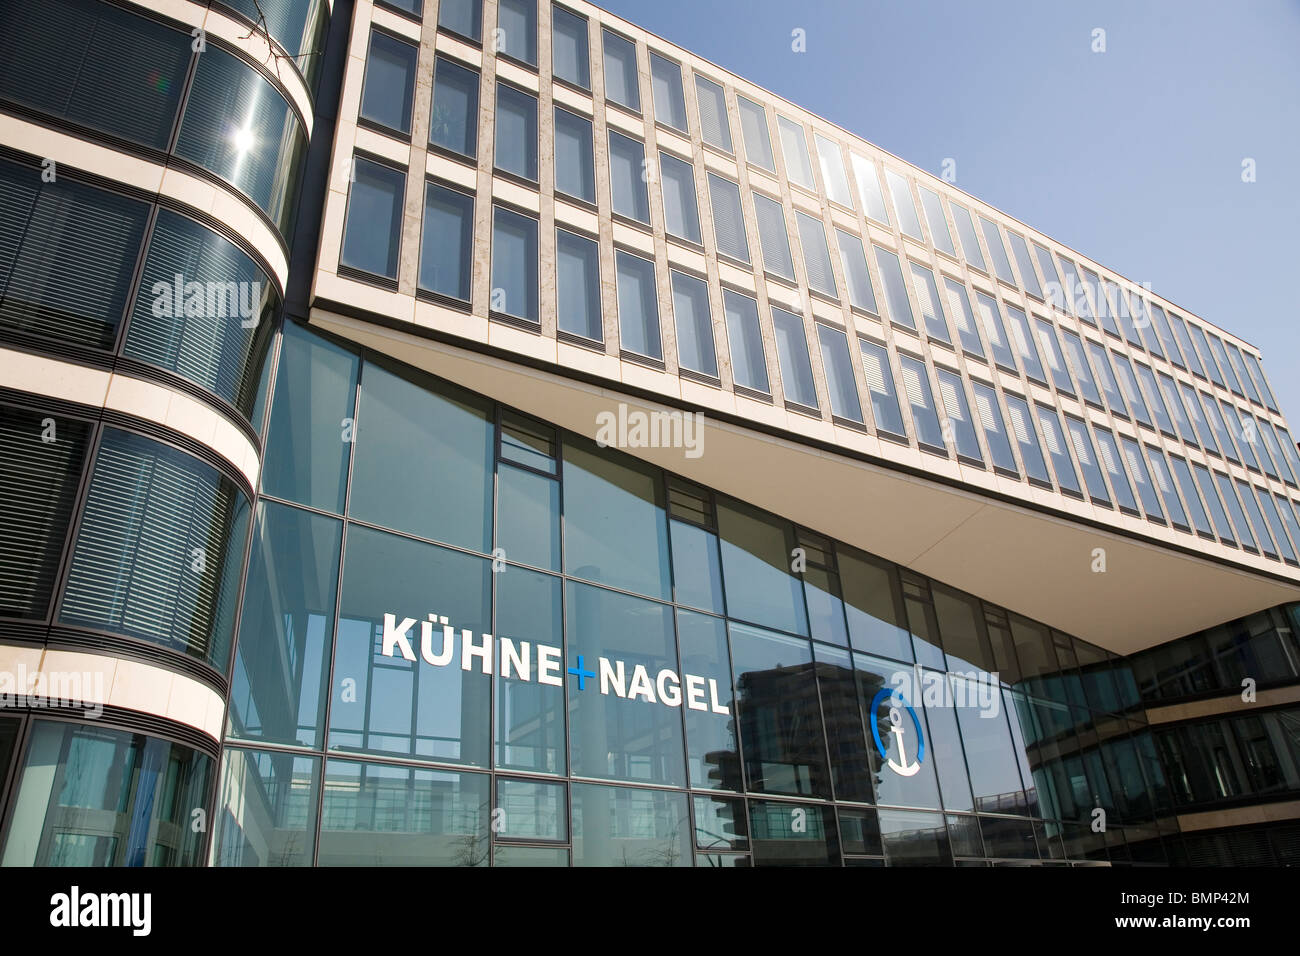 Der kühne Und Nagel-Büro im Bereich HafenCity Hamburg, Deutschland  Stockfotografie - Alamy